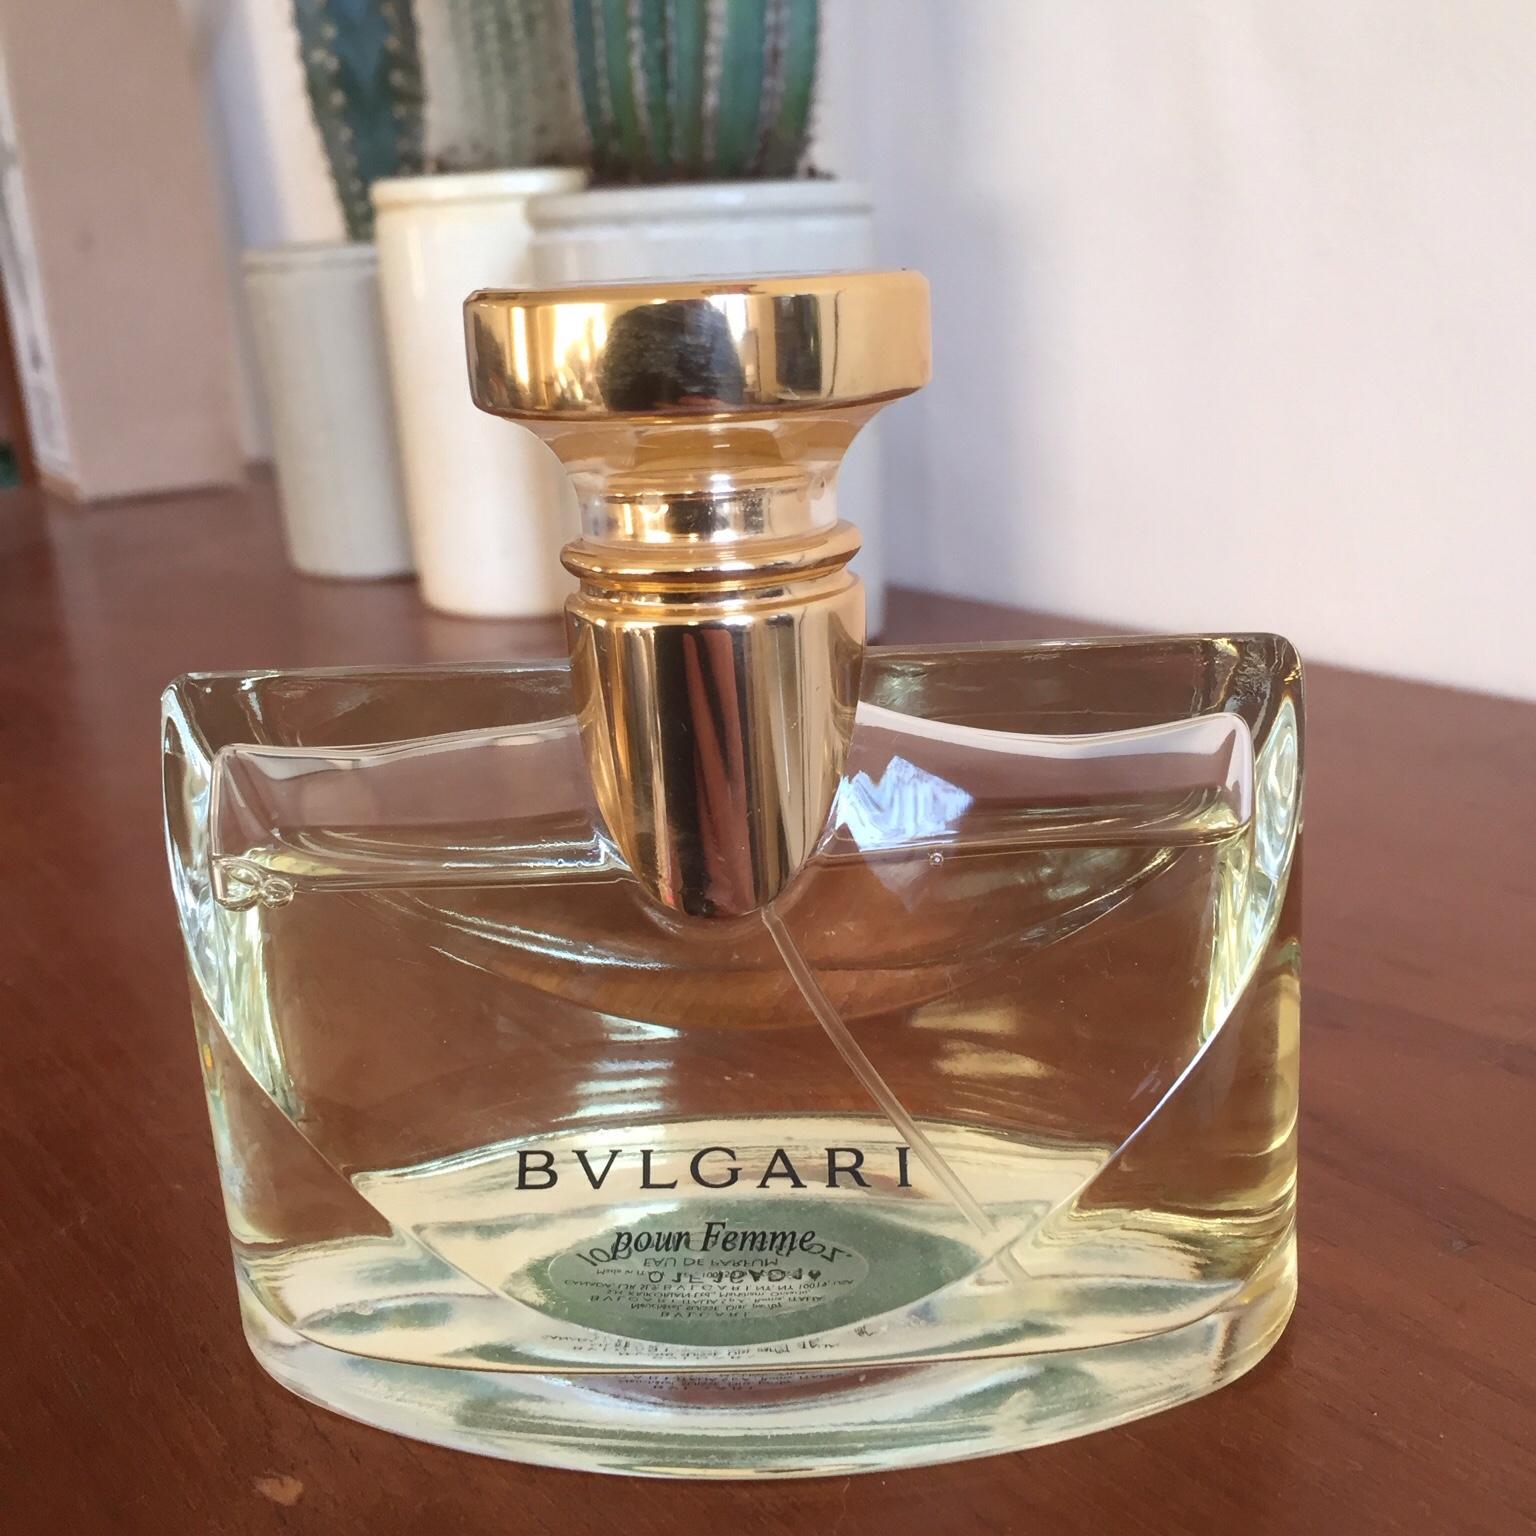 bvlgari pour femme perfume